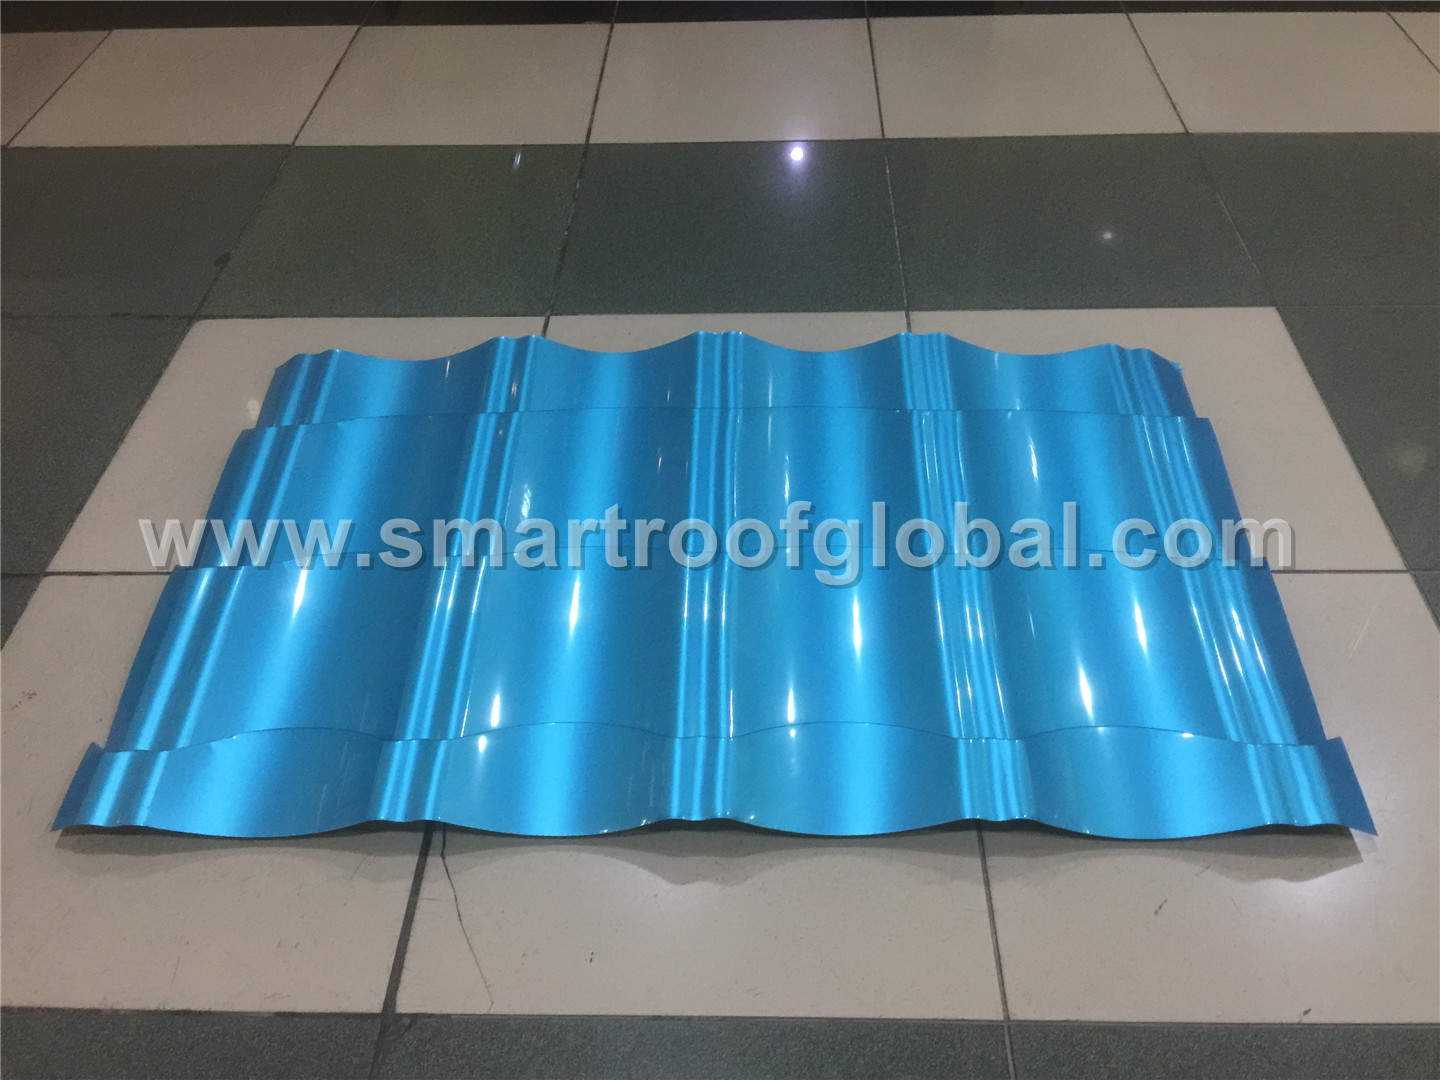 Wholesale Price Steel Metal Roofing - Wholesale Metal Roofing – Smartroof